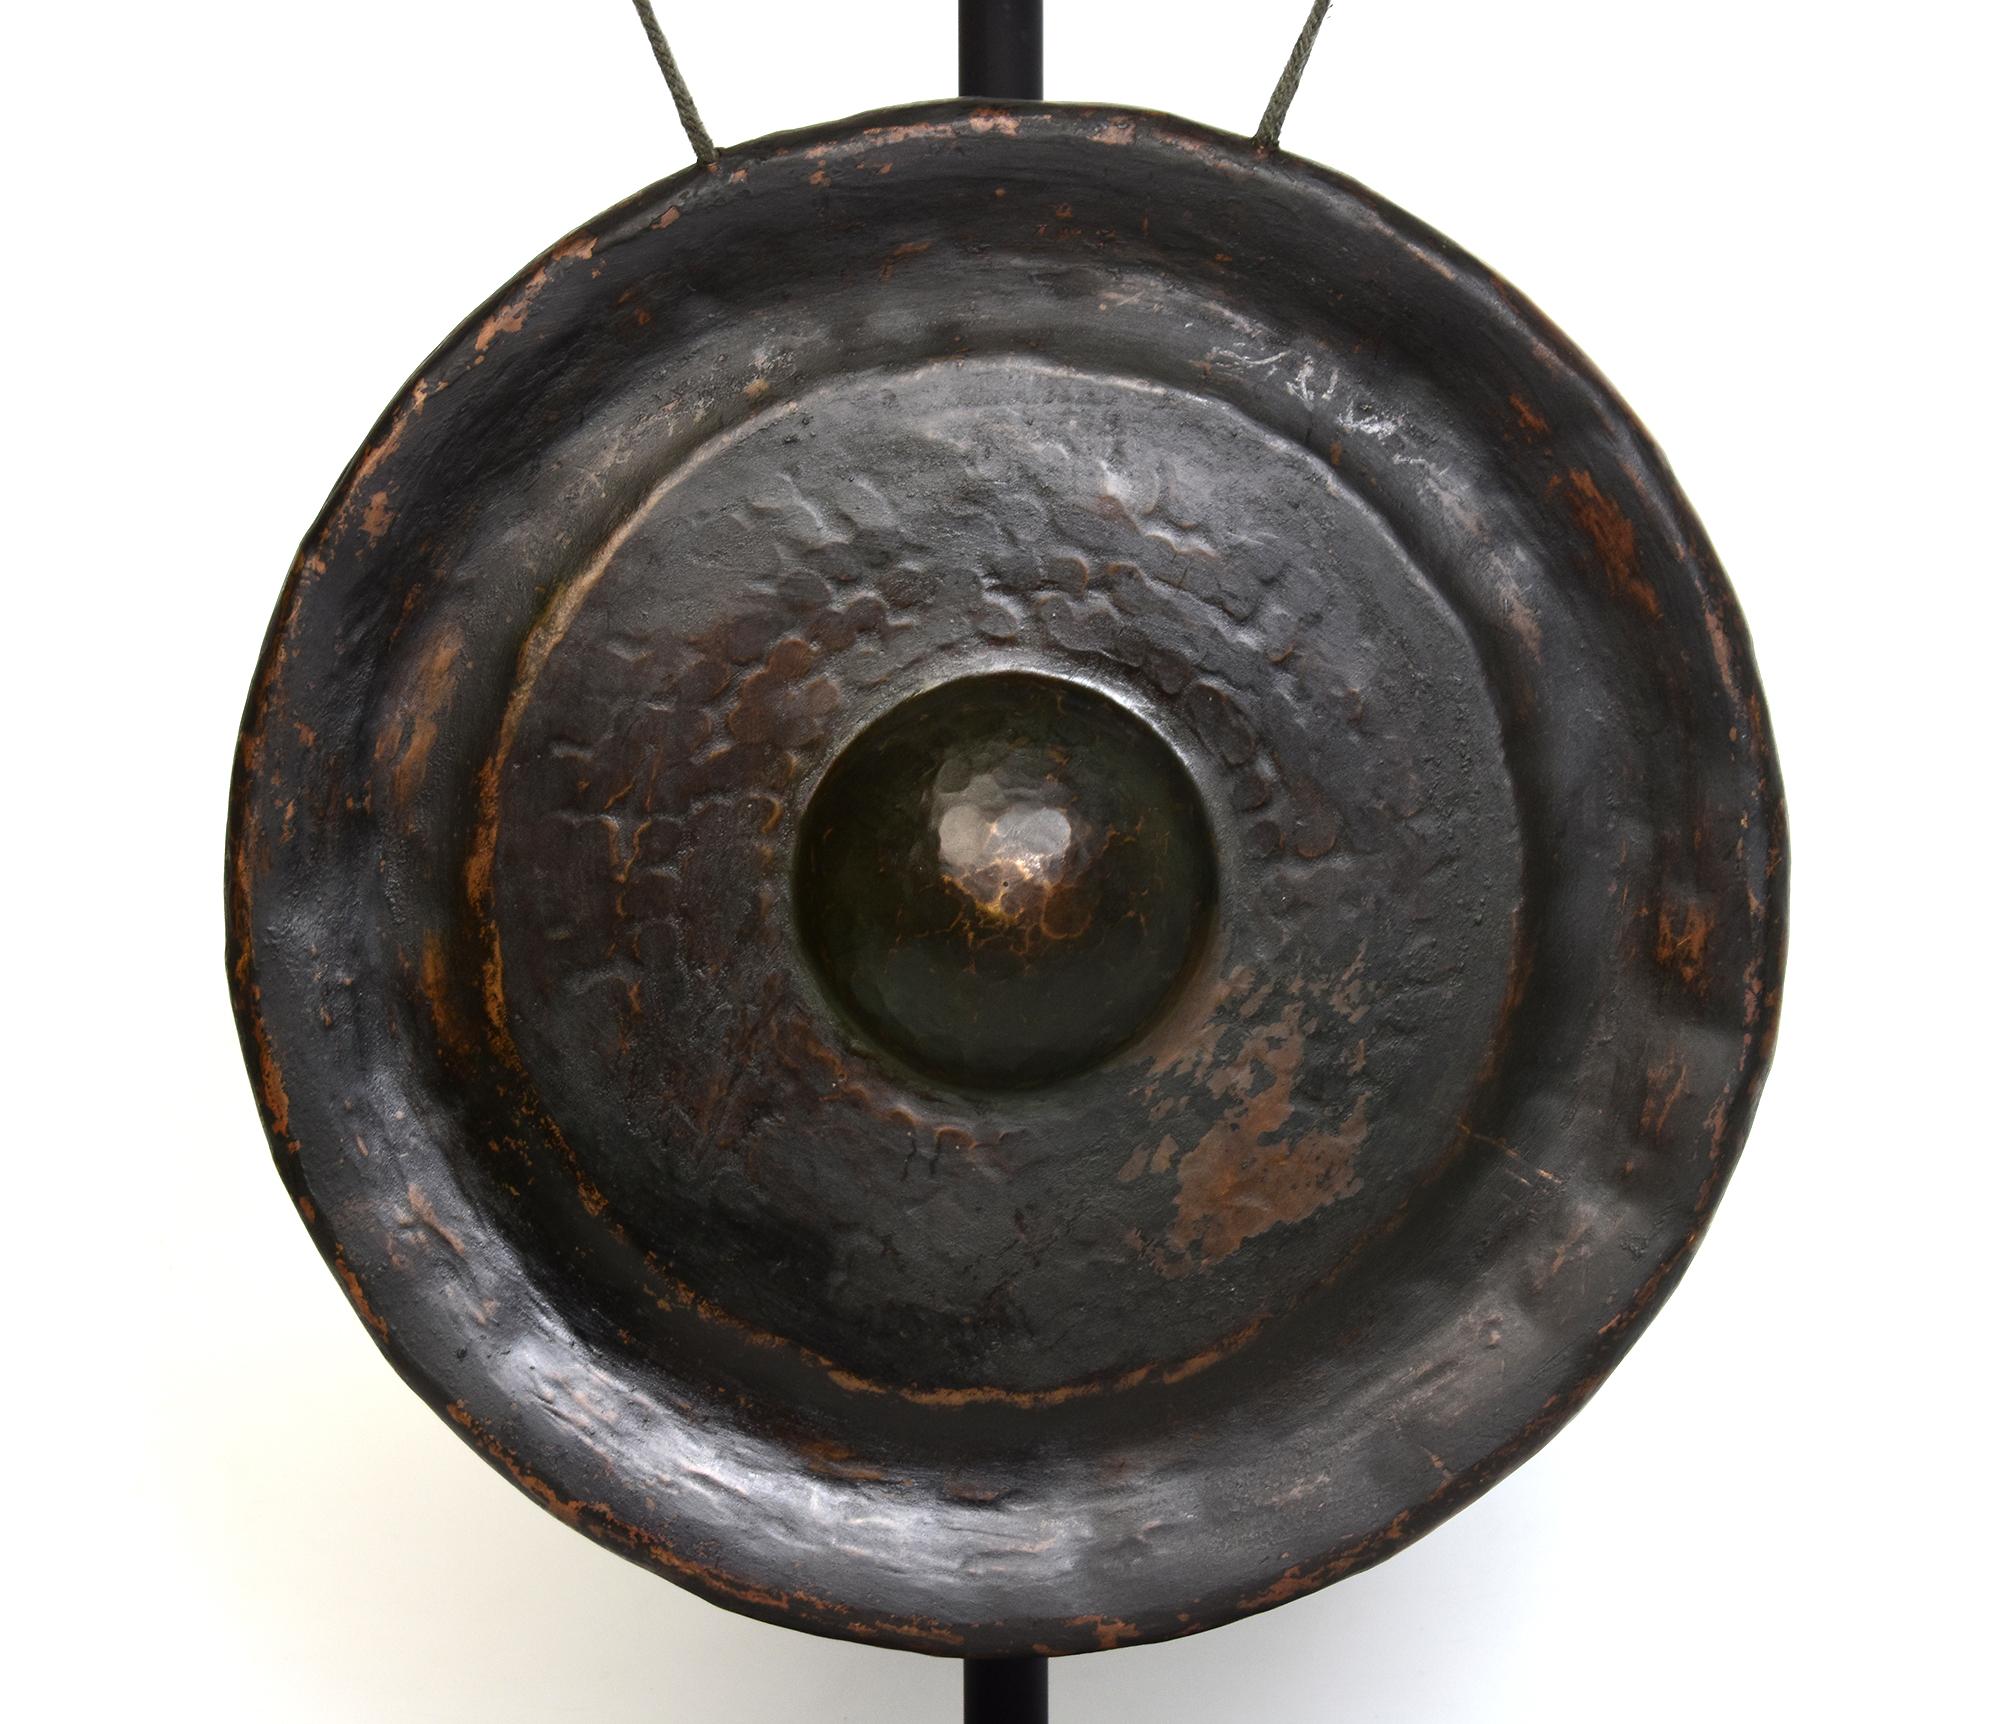 Antiker laotischer Bronzegong, eine Art laotisches Musikinstrument, das einen lauten und sonoren Klang erzeugt. Der Gongstock ist im Lieferumfang enthalten.

Alter: Laos, 19. Jahrhundert
Nur Größe des Gongs: Durchmesser 35,5 C.M. / Dicke 9 C.M.
Höhe